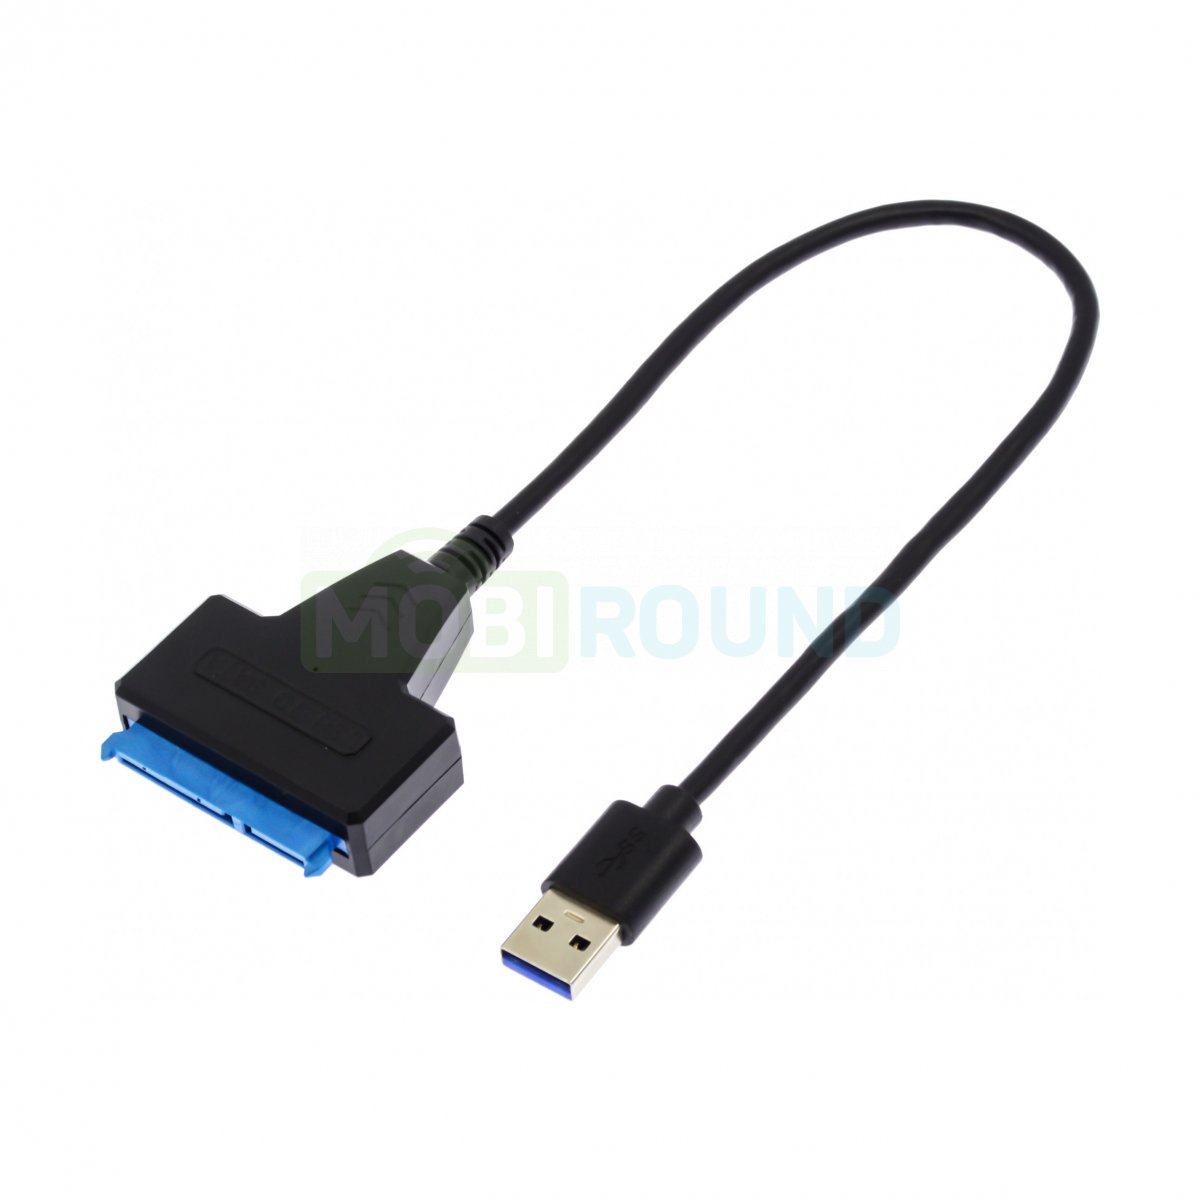 Переходник USB type-C - USB OTG для подключения периферийных USB устройств